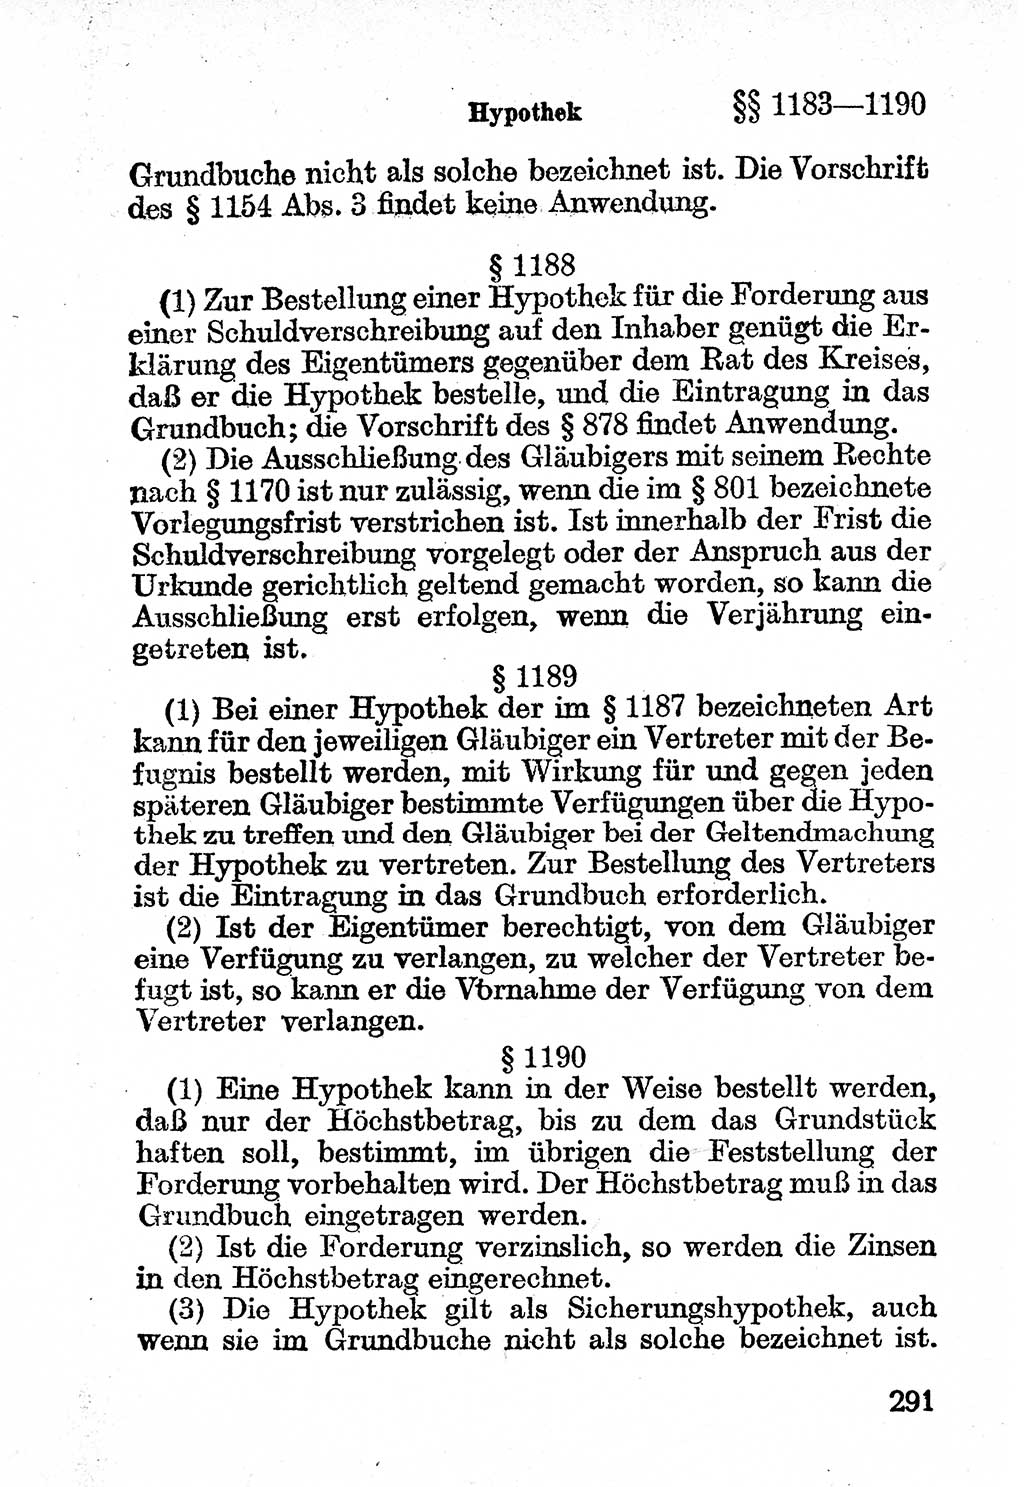 Bürgerliches Gesetzbuch (BGB) nebst wichtigen Nebengesetzen [Deutsche Demokratische Republik (DDR)] 1956, Seite 291 (BGB Nebenges. DDR 1956, S. 291)